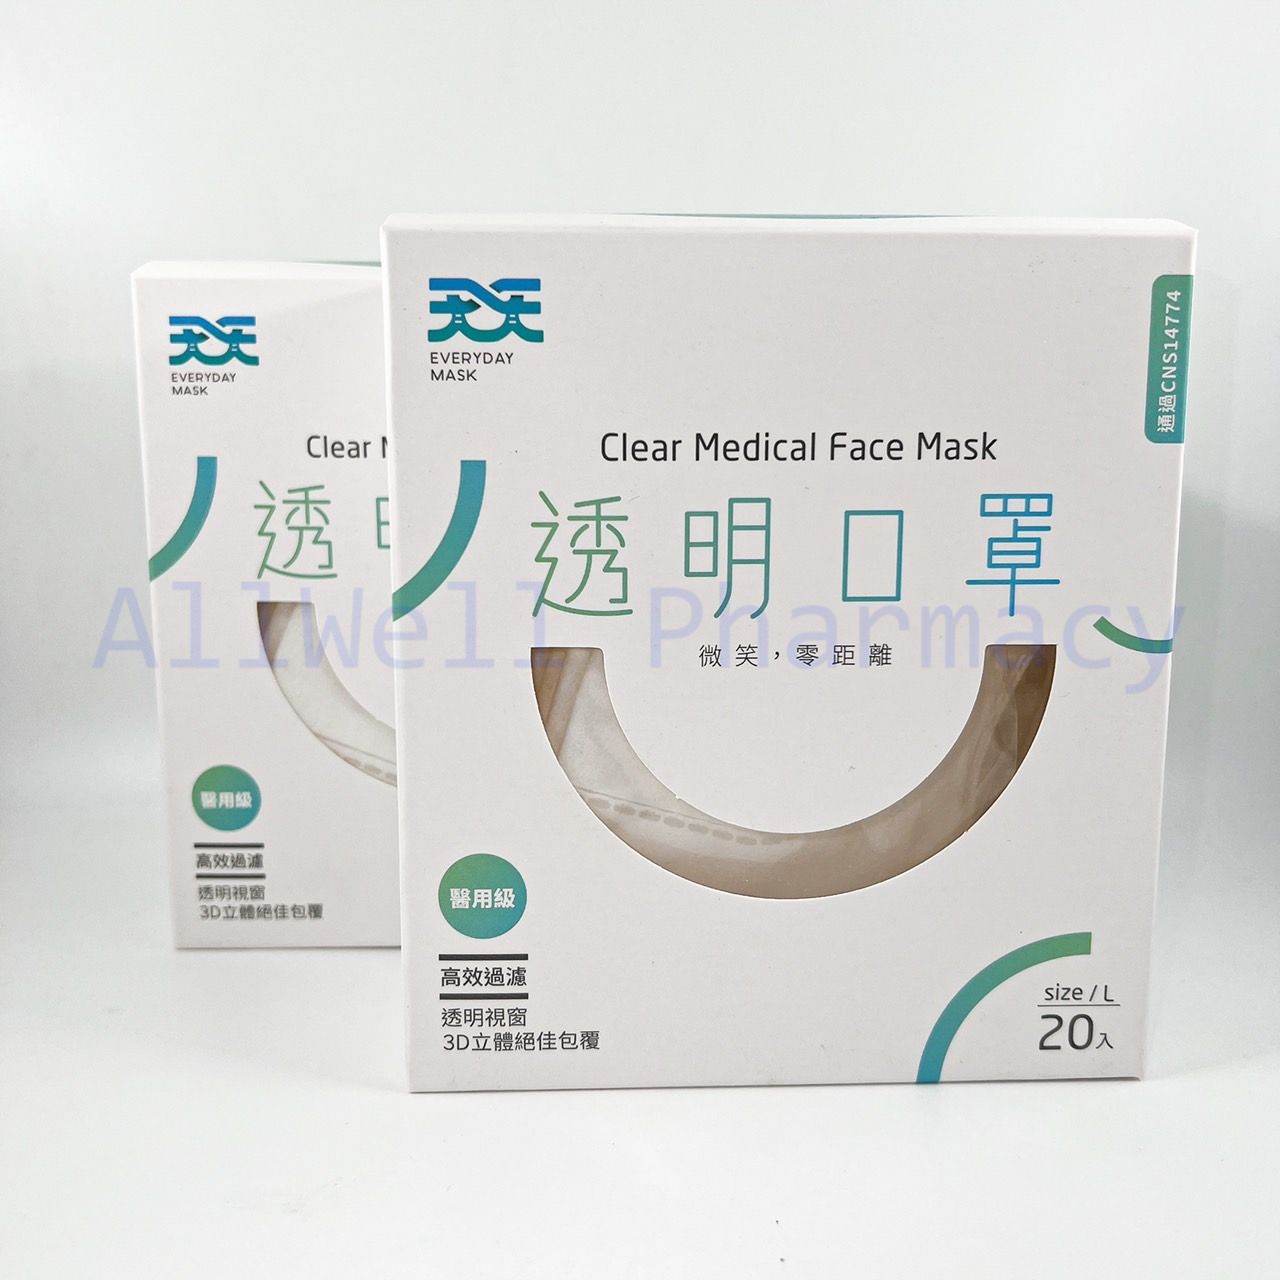 天天 3D立體醫療 透明成人 微笑口罩 L 白色 (20入/盒)